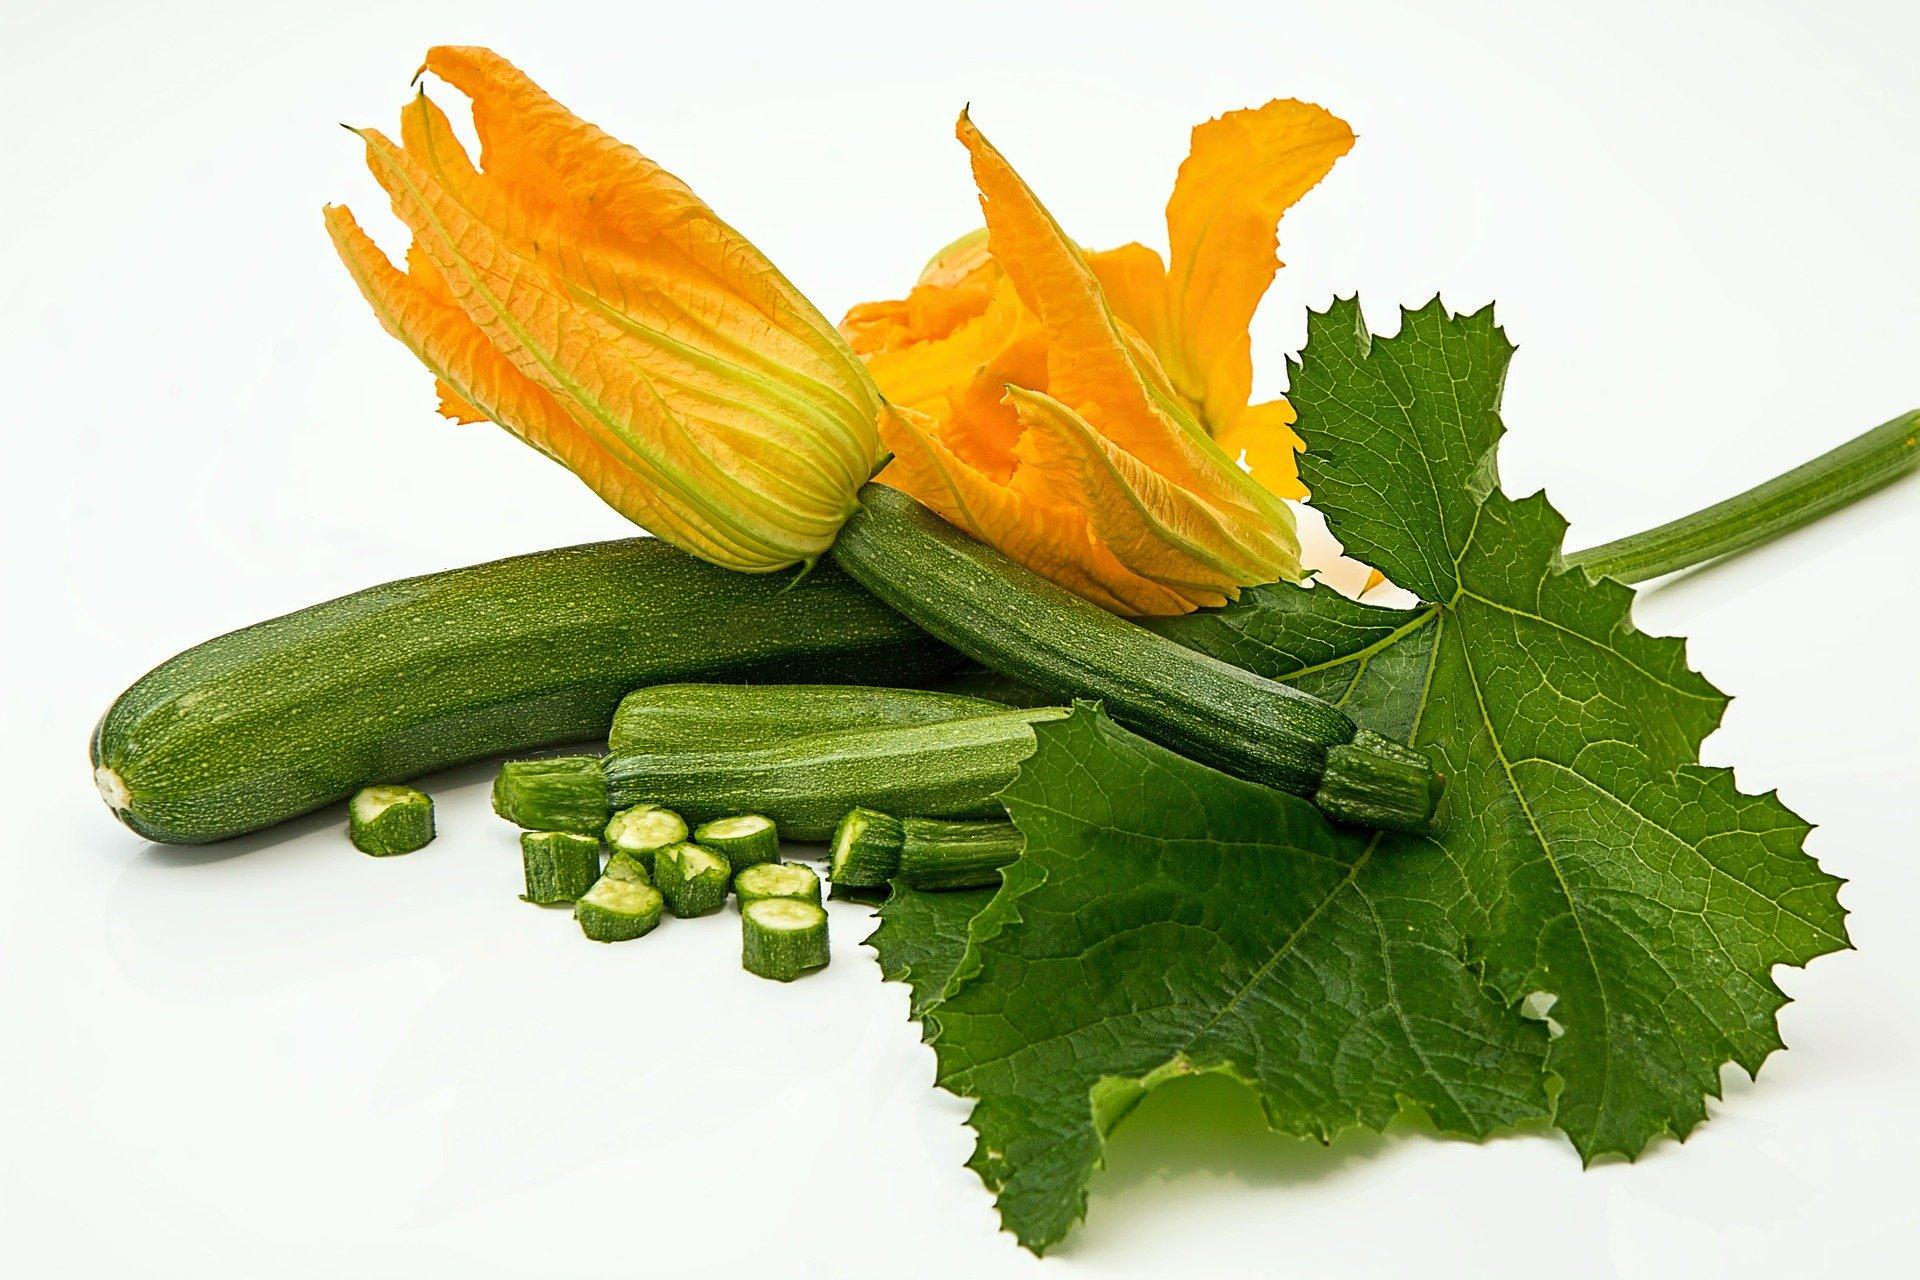 zucchini and zucchini flowers